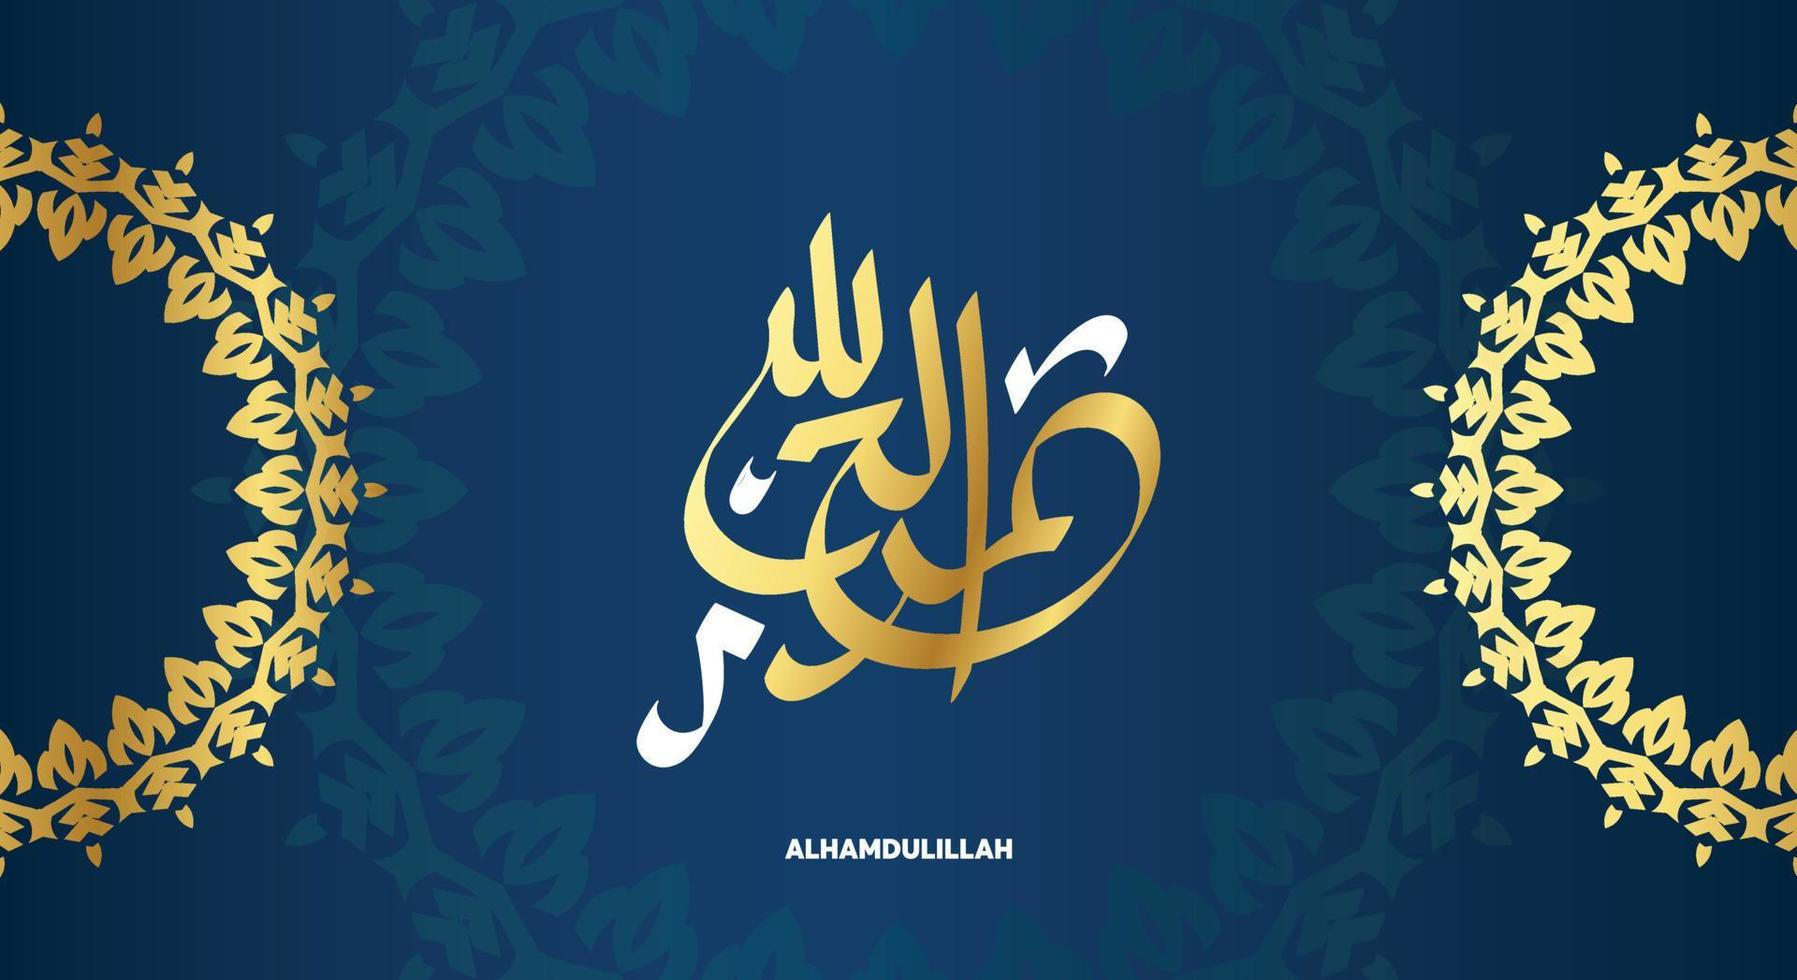 caligrafía árabe alhamdulillah con color dorado, adecuada para adornos de diseño islámico o decoración de mezquitas vector